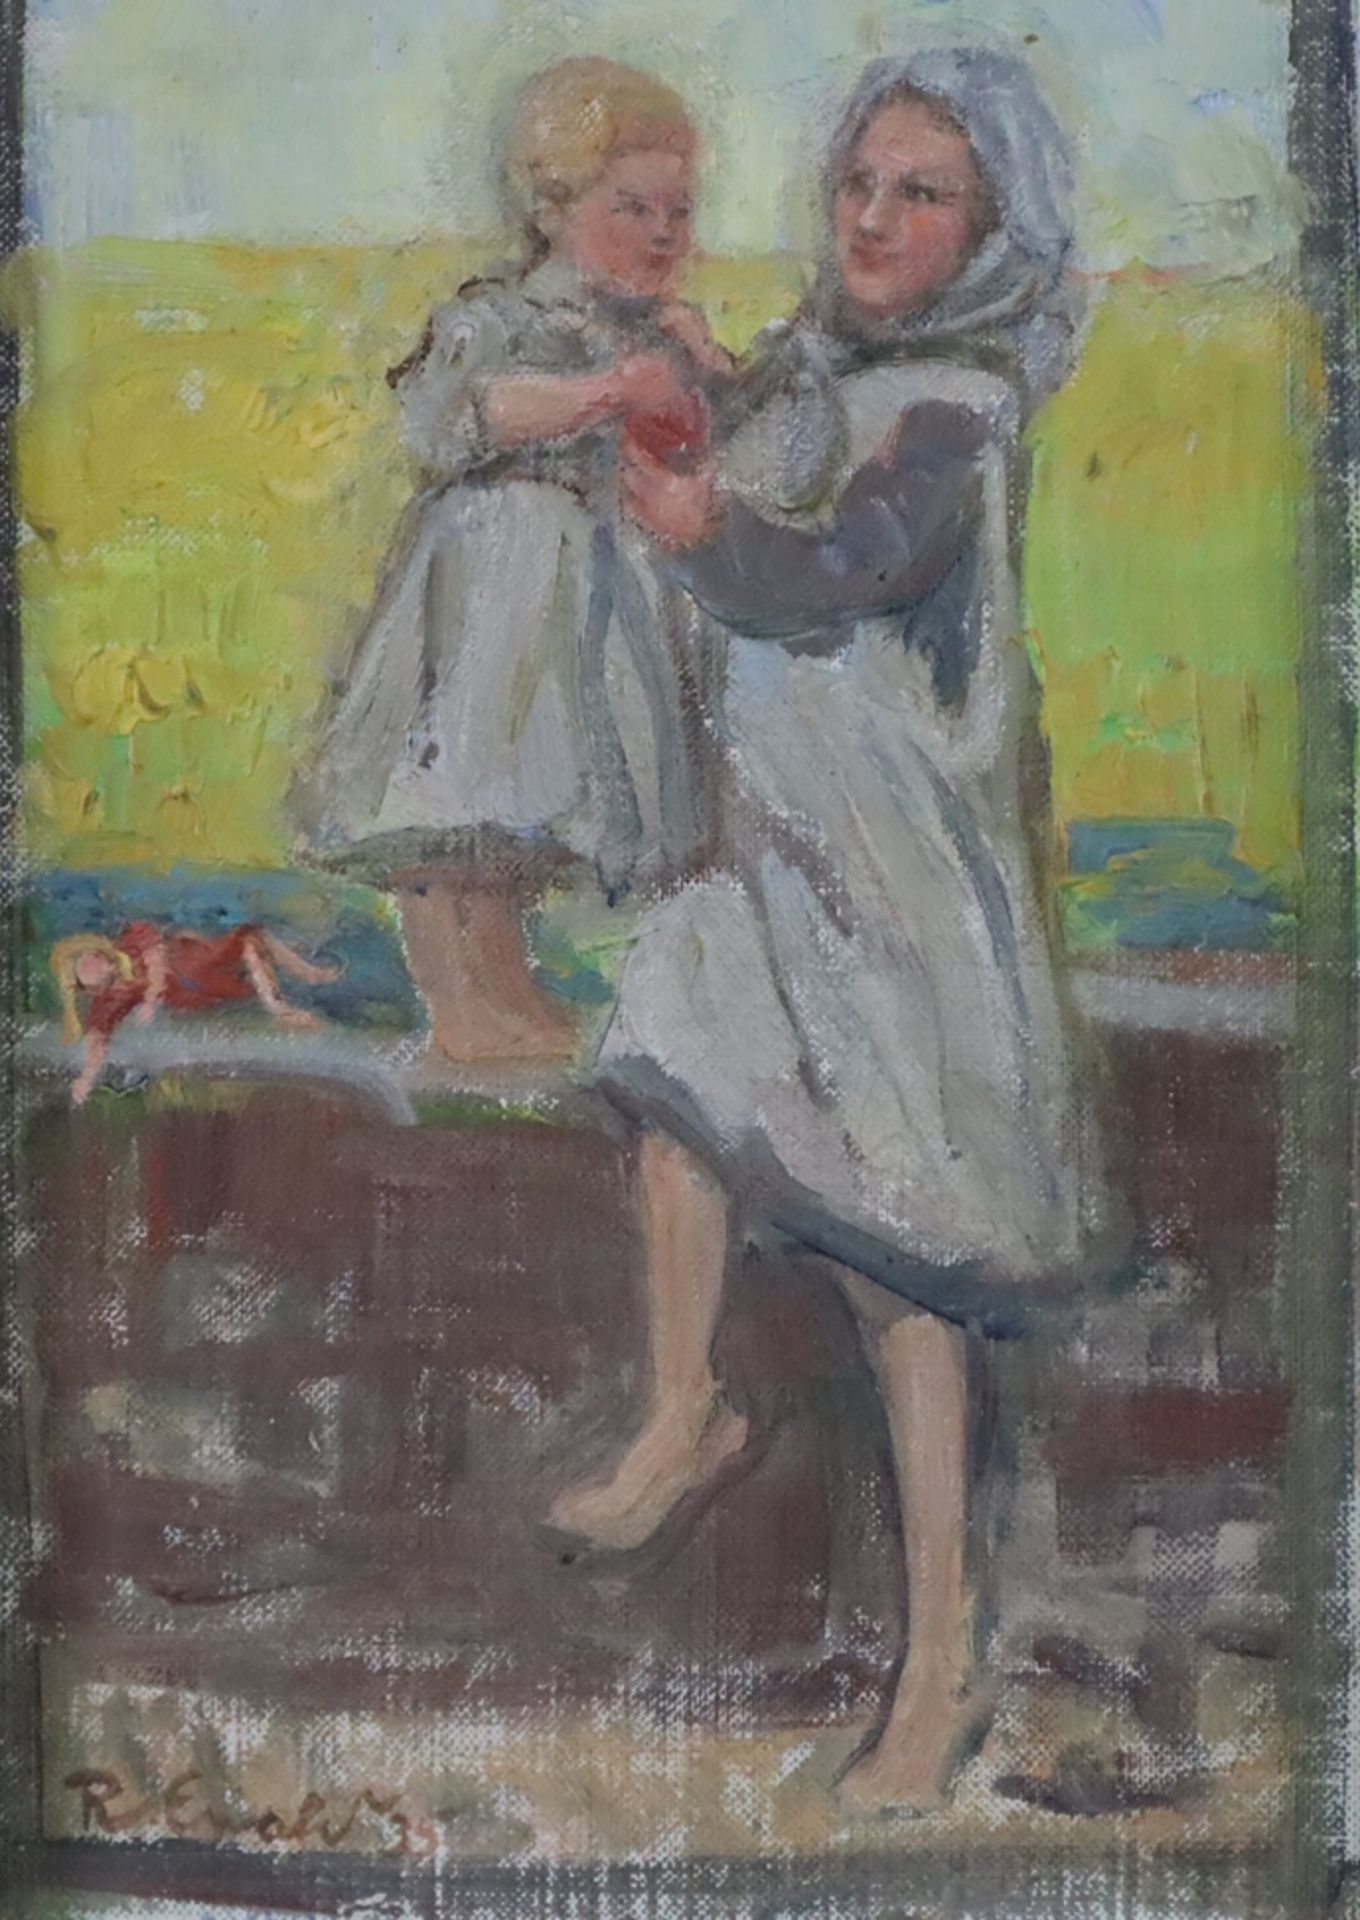 Ewald, Reinhold (1890 - Hanau - 1974) - Junge Bäuerin mit Tochter spielend, Öl/Leinwand auf Holzpla